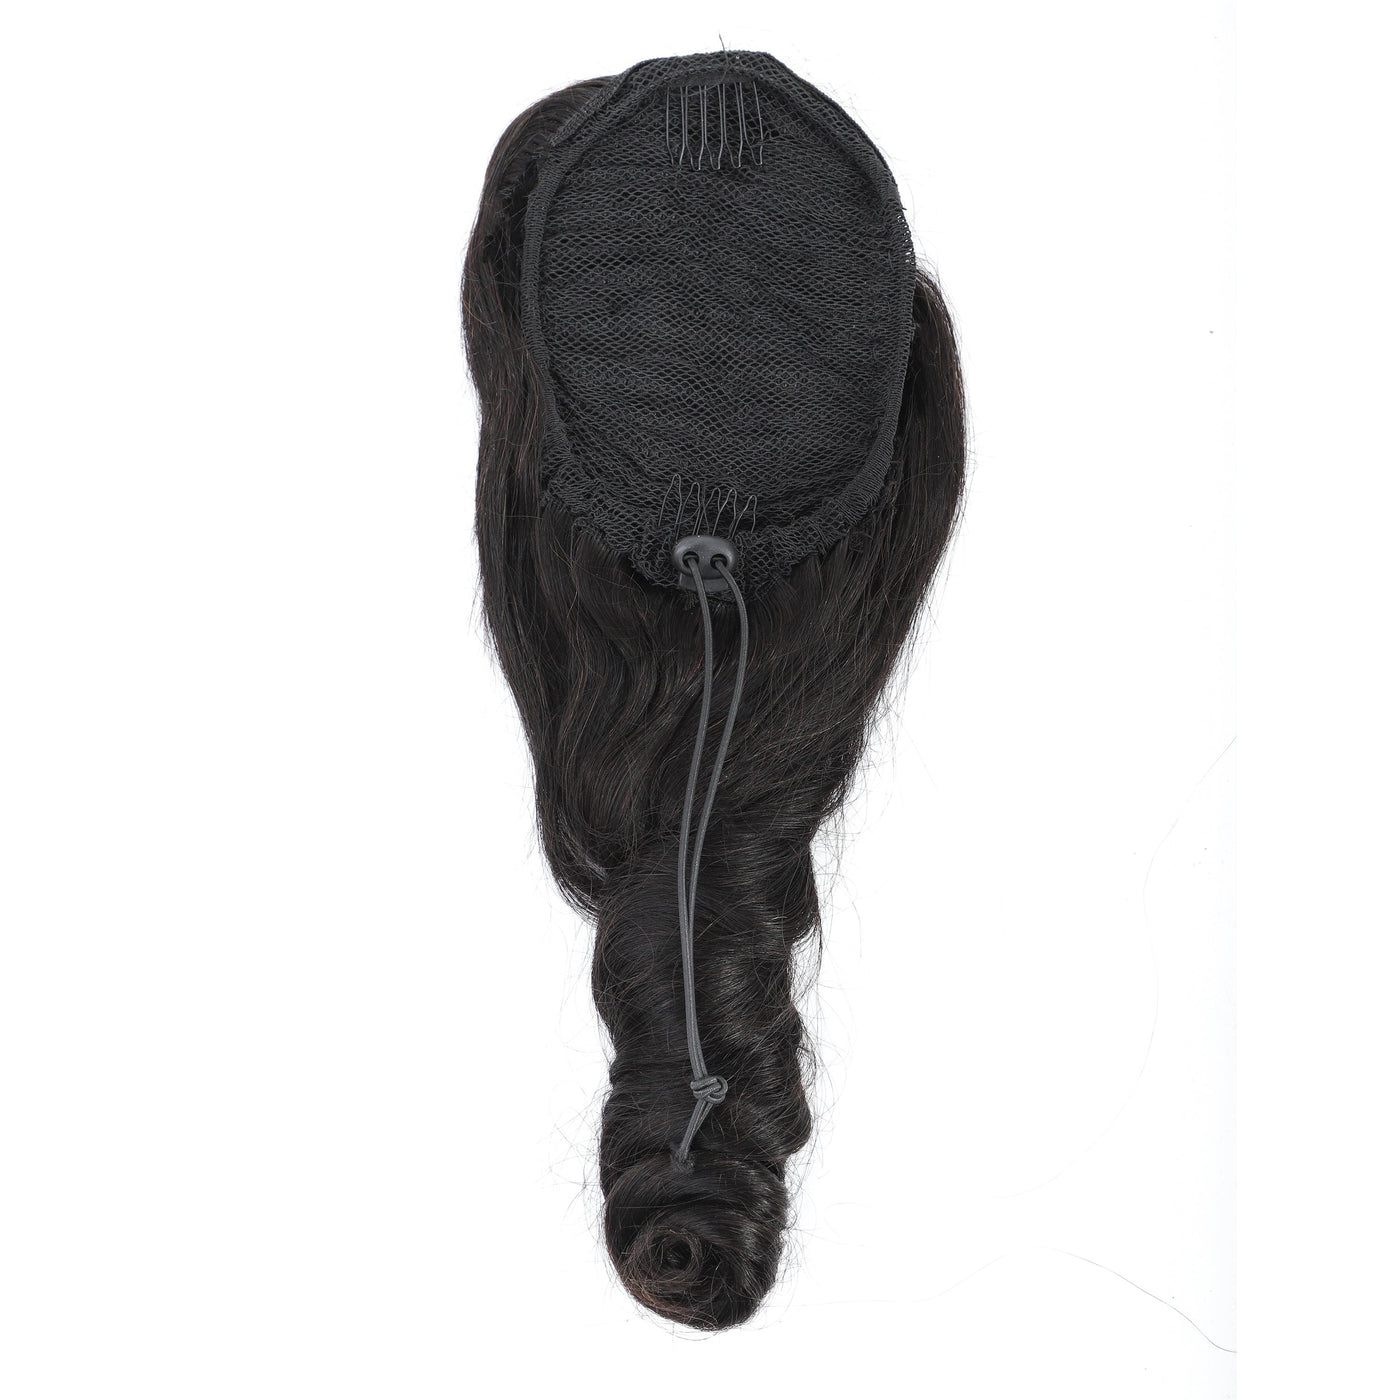 Loose Wave Drawstring Ponytail Extension Human Hair For Black Women